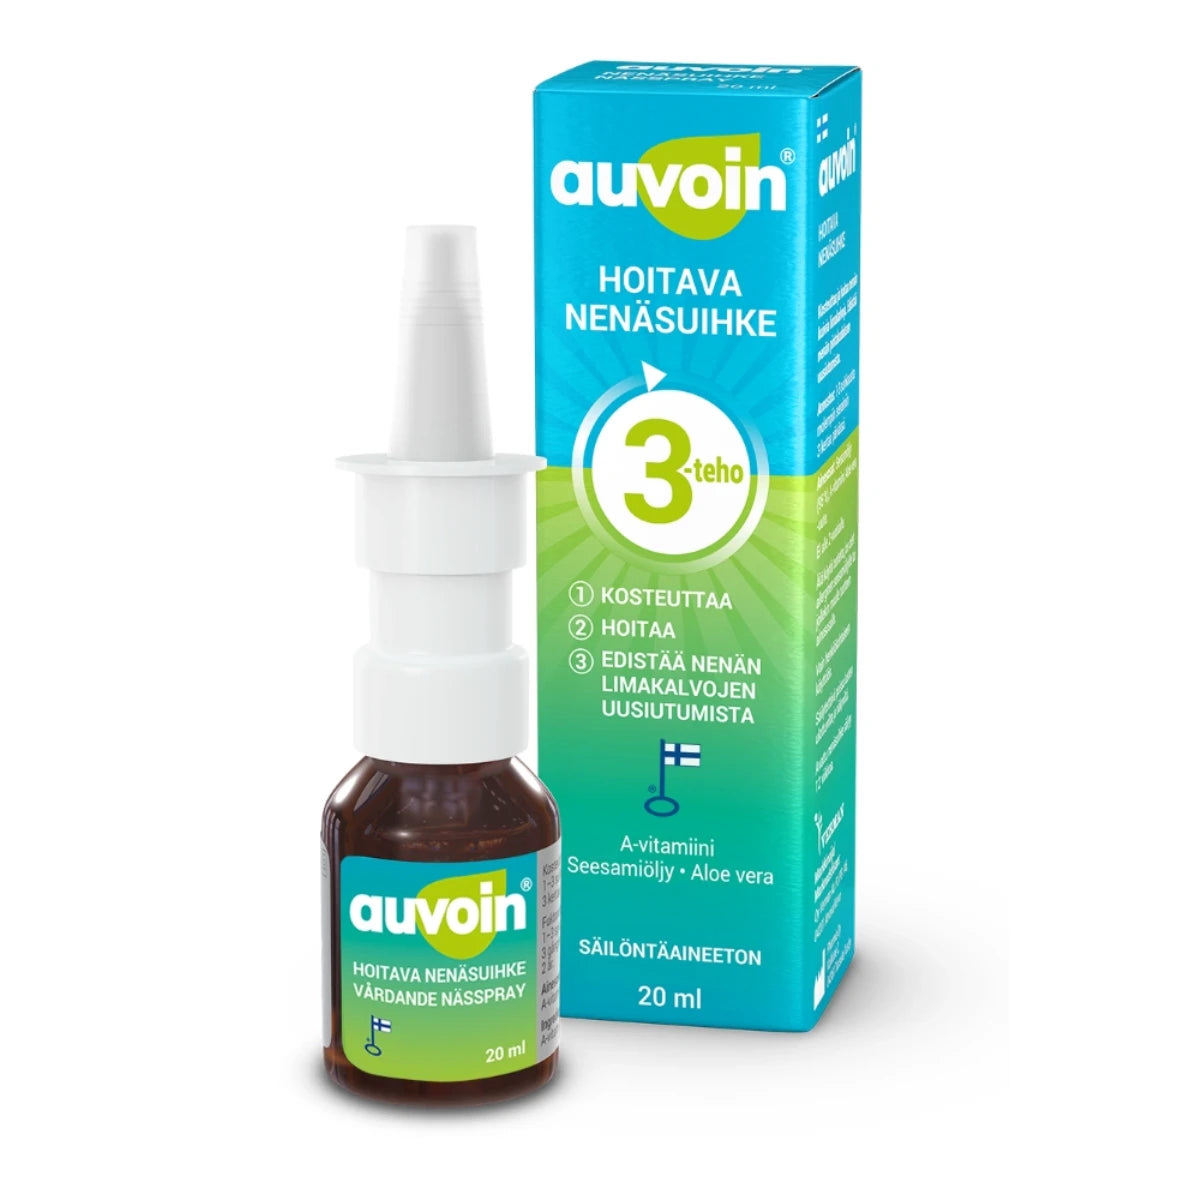 AUVOIN Hoitava A-vitamiini nenäsuihke 20 ml kosteuttamaan ja hoitamaan nenän kuivia limakalvoja sekä edistämään nenän epiteelin uusiutumista